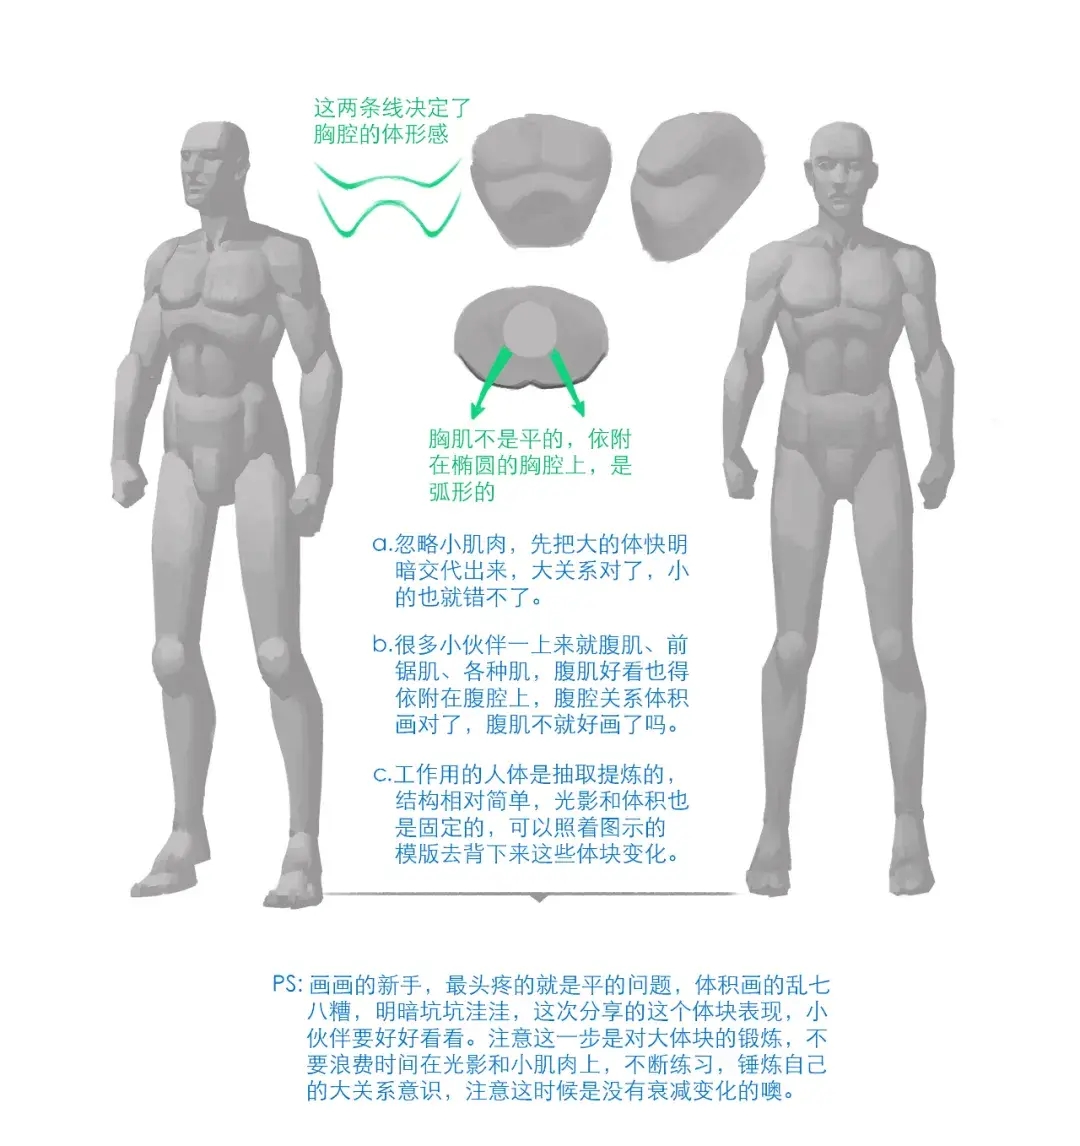 【绘画教程】头像块面绘制和人物体块分析(人体教程)